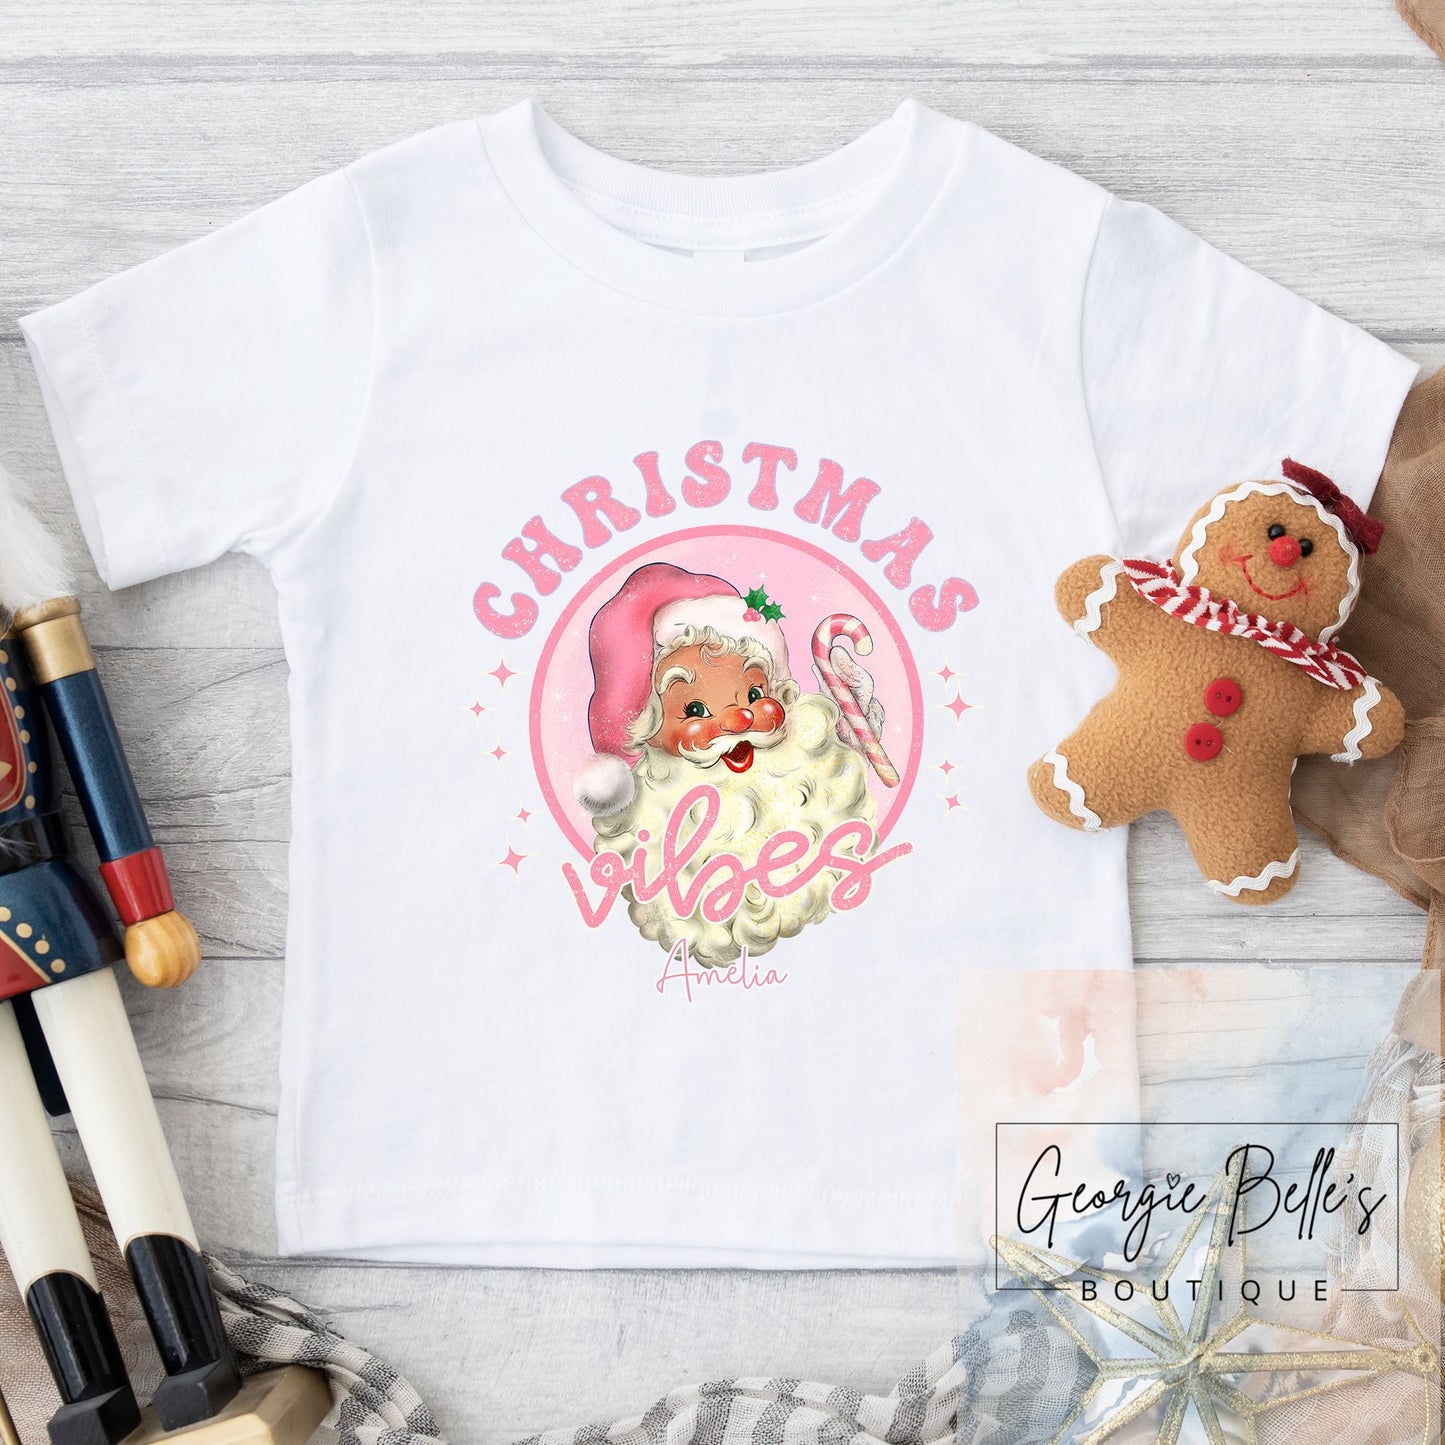 Christmas Vest / T-shirt - Pink Christmas Vibes Design